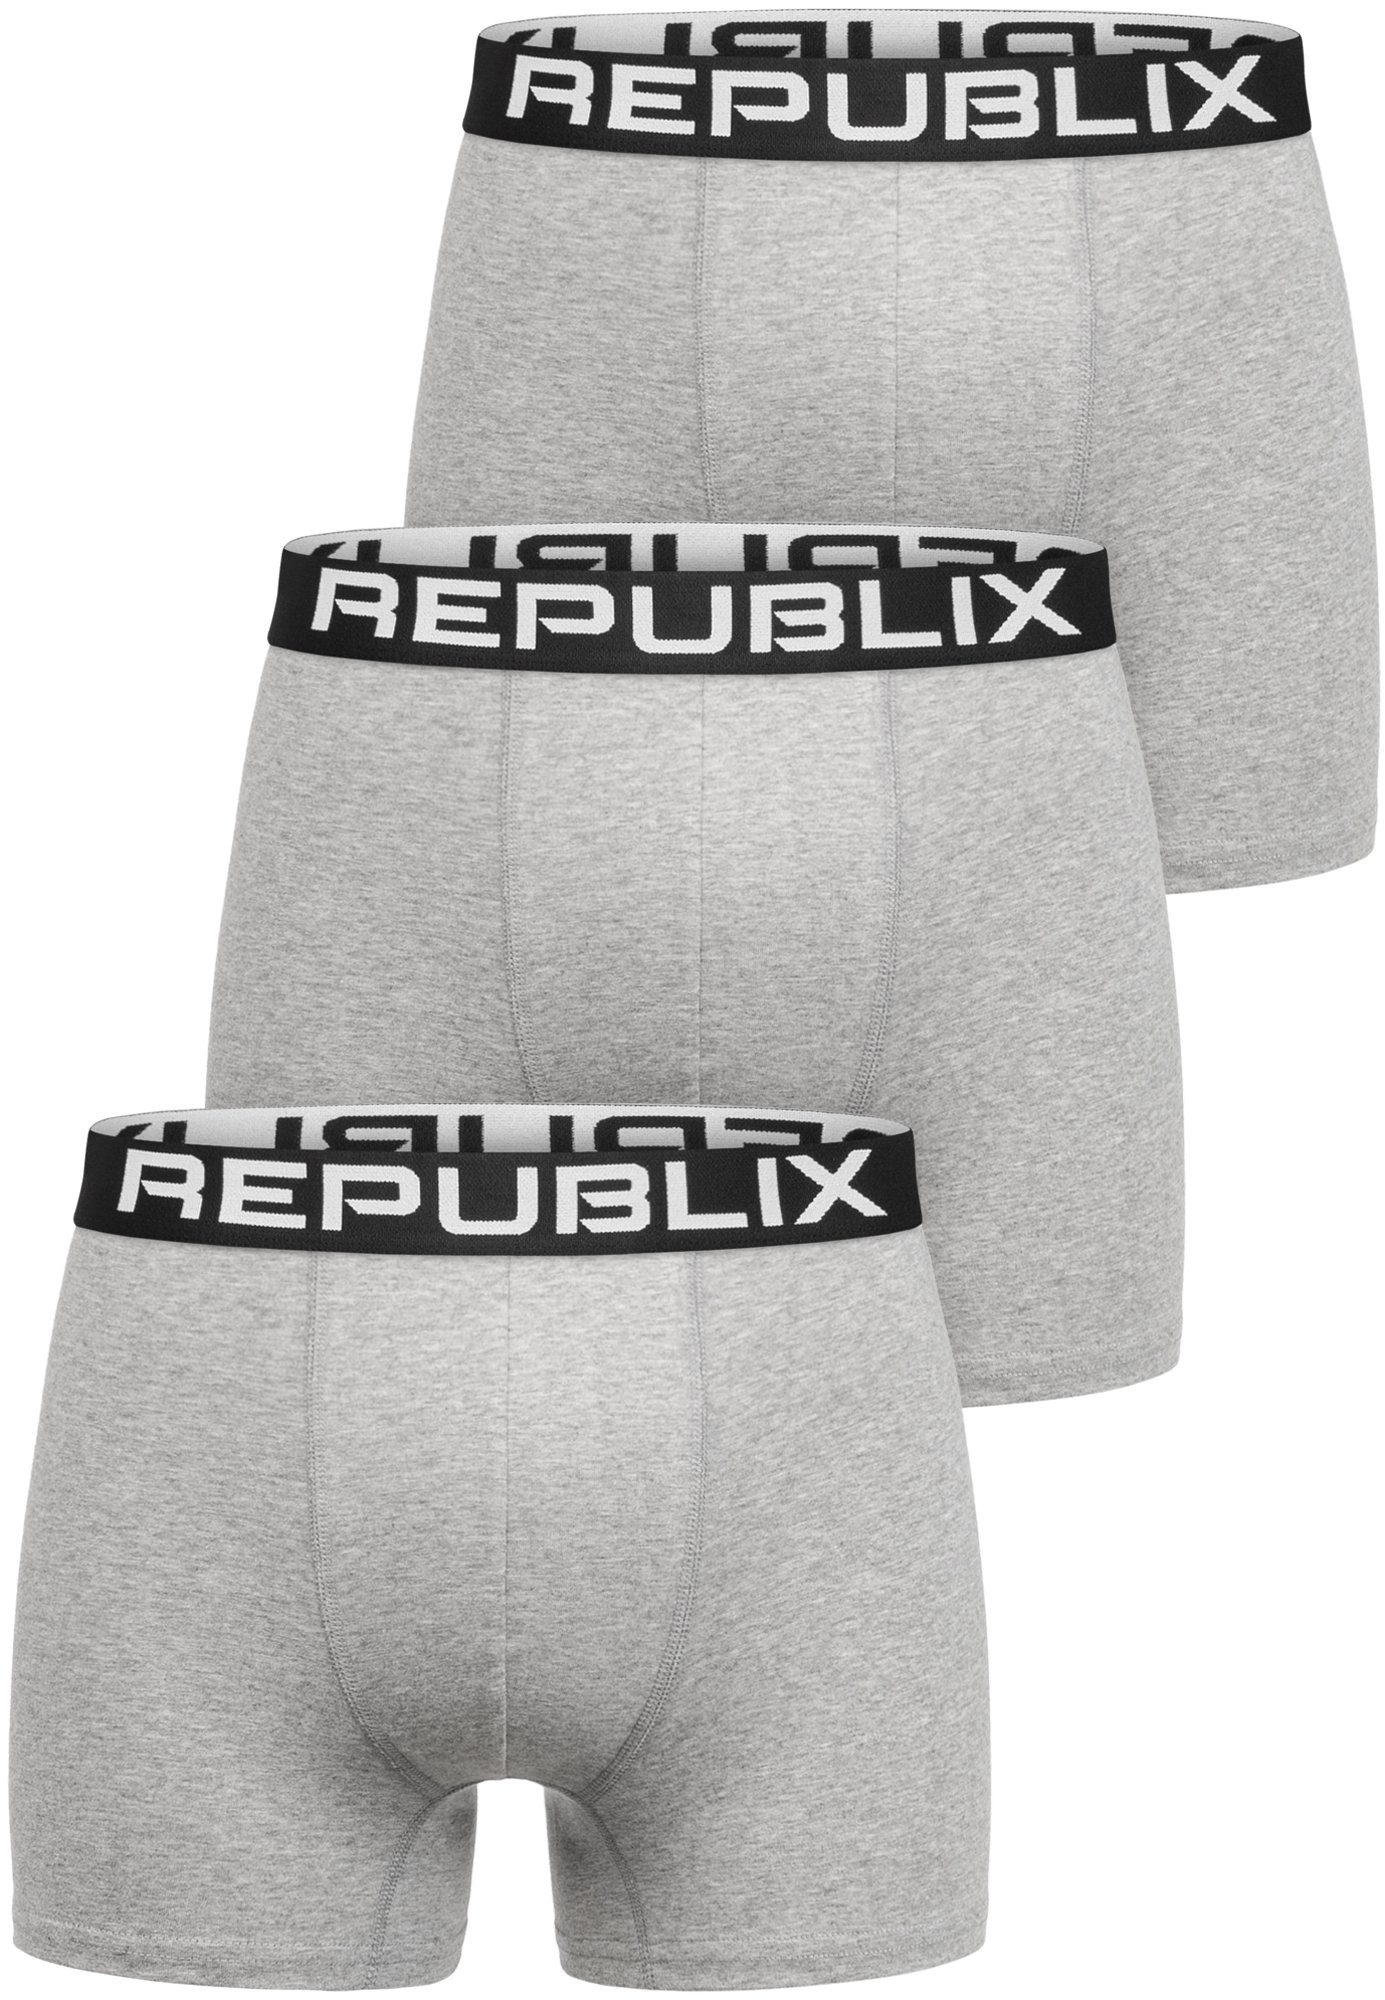 REPUBLIX Boxershorts DON (3er-Pack) Baumwolle Herren Männer Grau/Schwarz Unterhose Unterwäsche